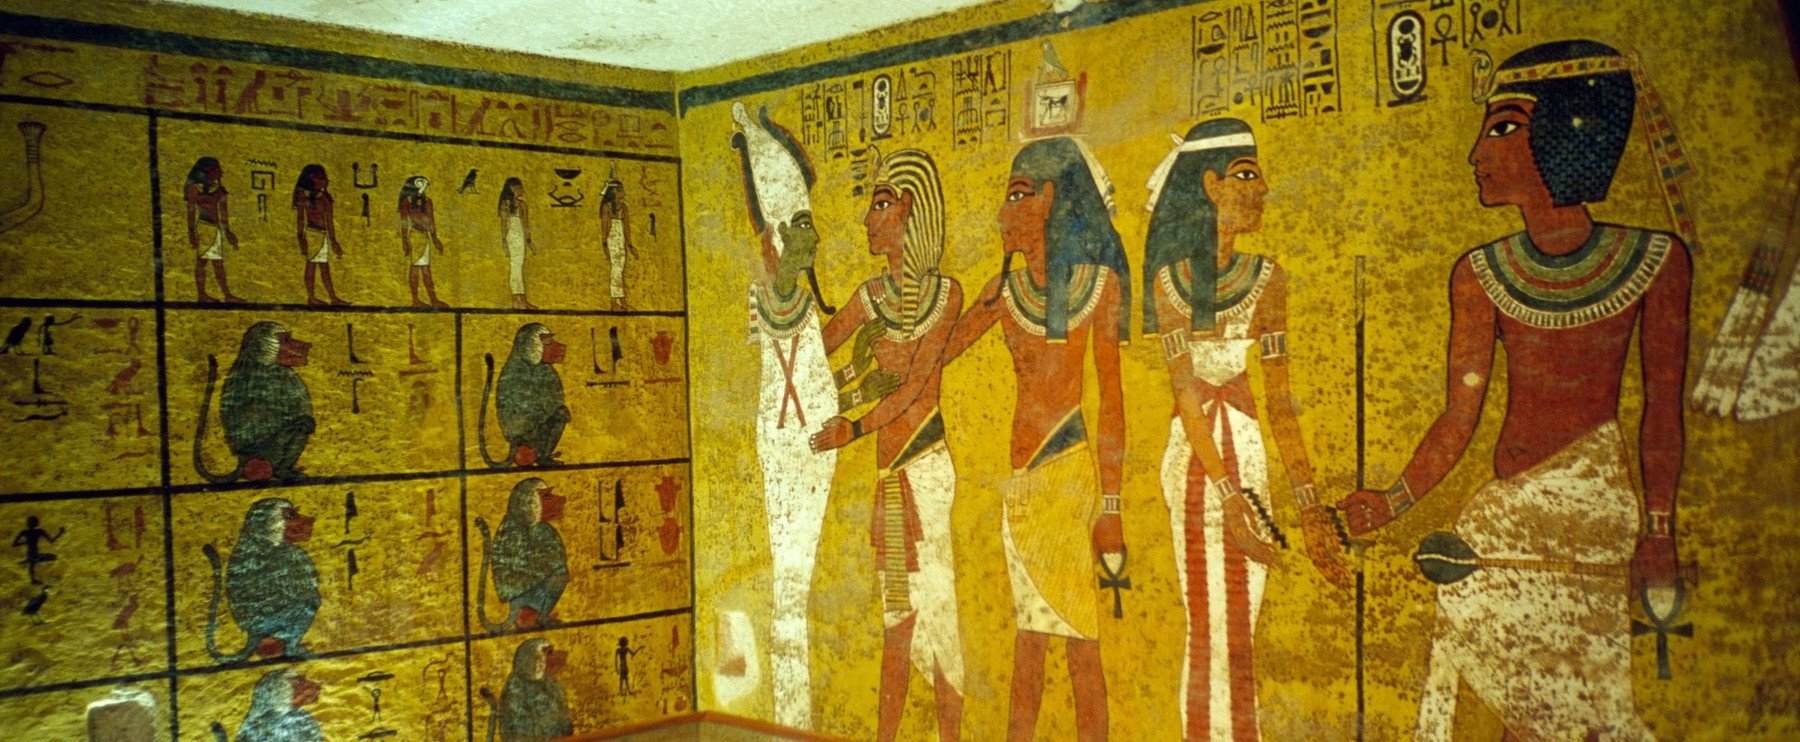 Felnyitották az egyiptomi fáraó rejtett sírját, súlyos következménye lett - tudósok egy köre így magyarázza a fáraó átkát